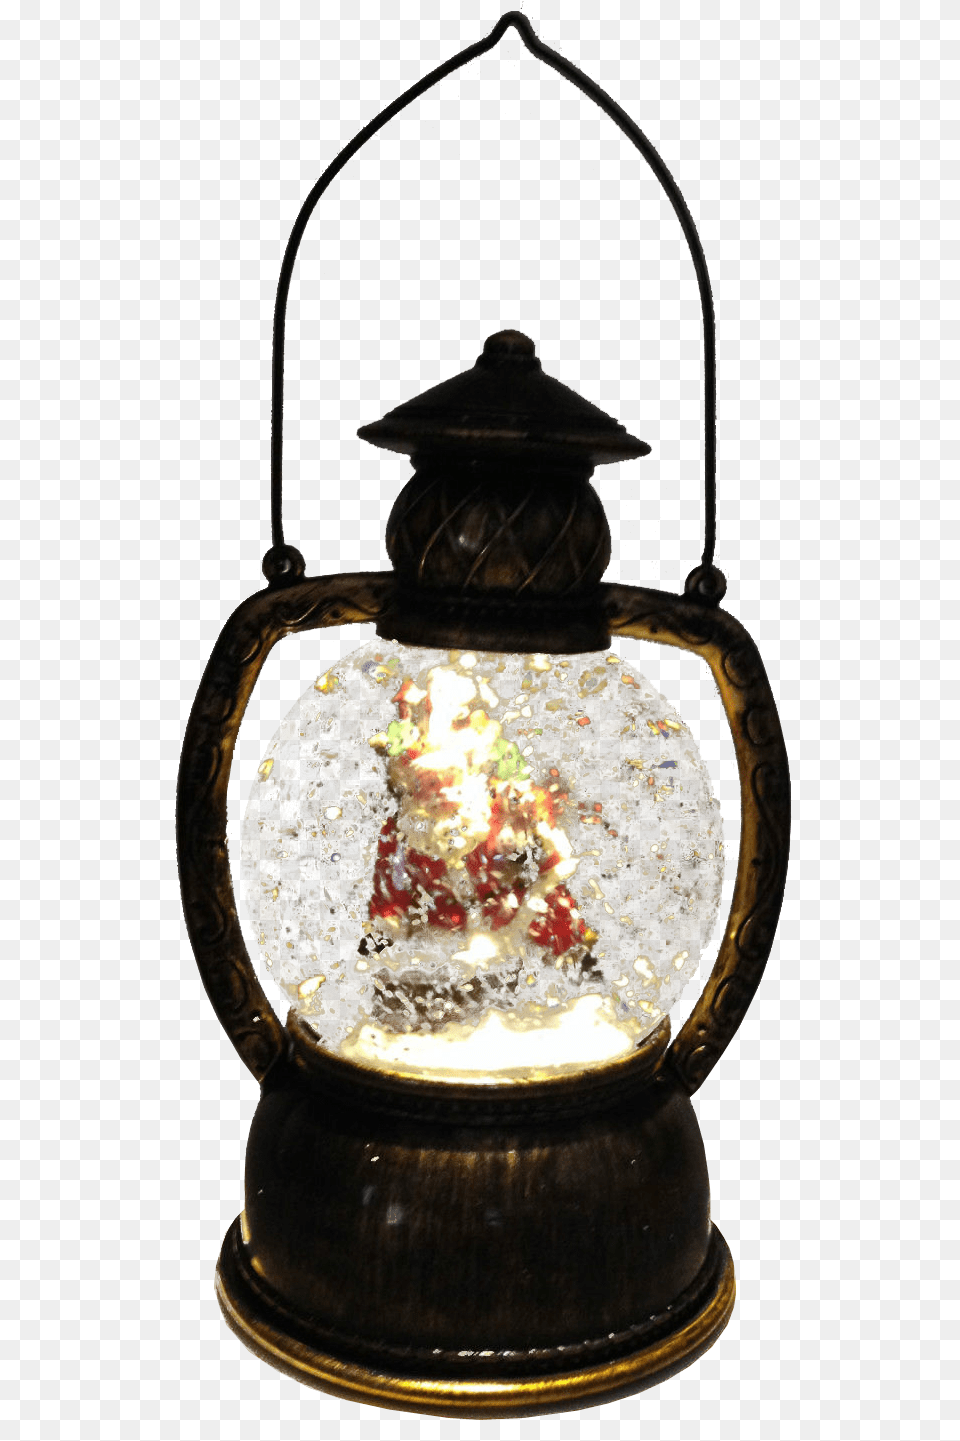 Christmas Snow Globe Lantern Lamp, Smoke Pipe Free Transparent Png